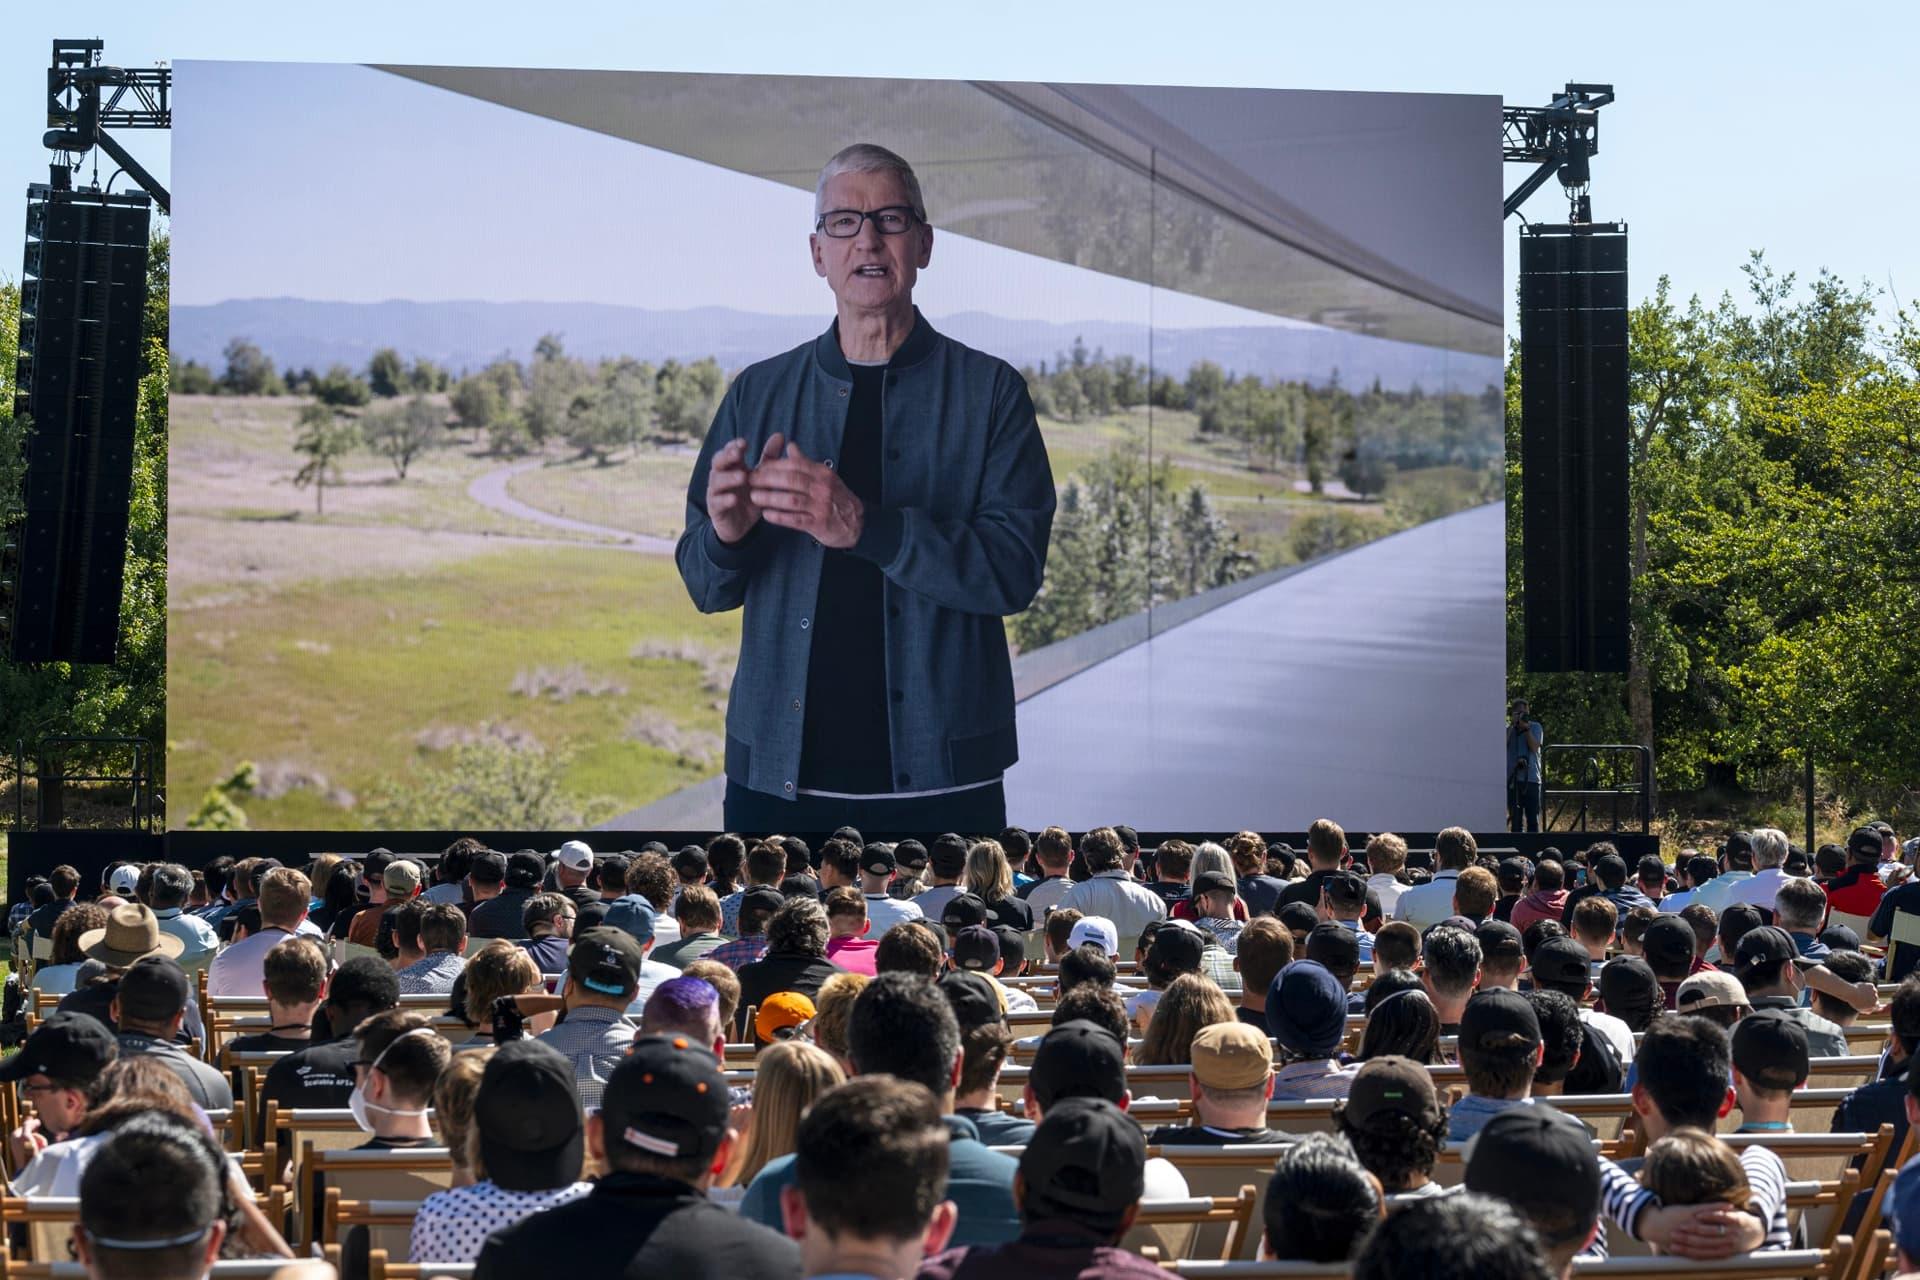 مردم در حال تماشا تیم کوک / Tim Cook روی نمایشگر WWDC 2022 اپل